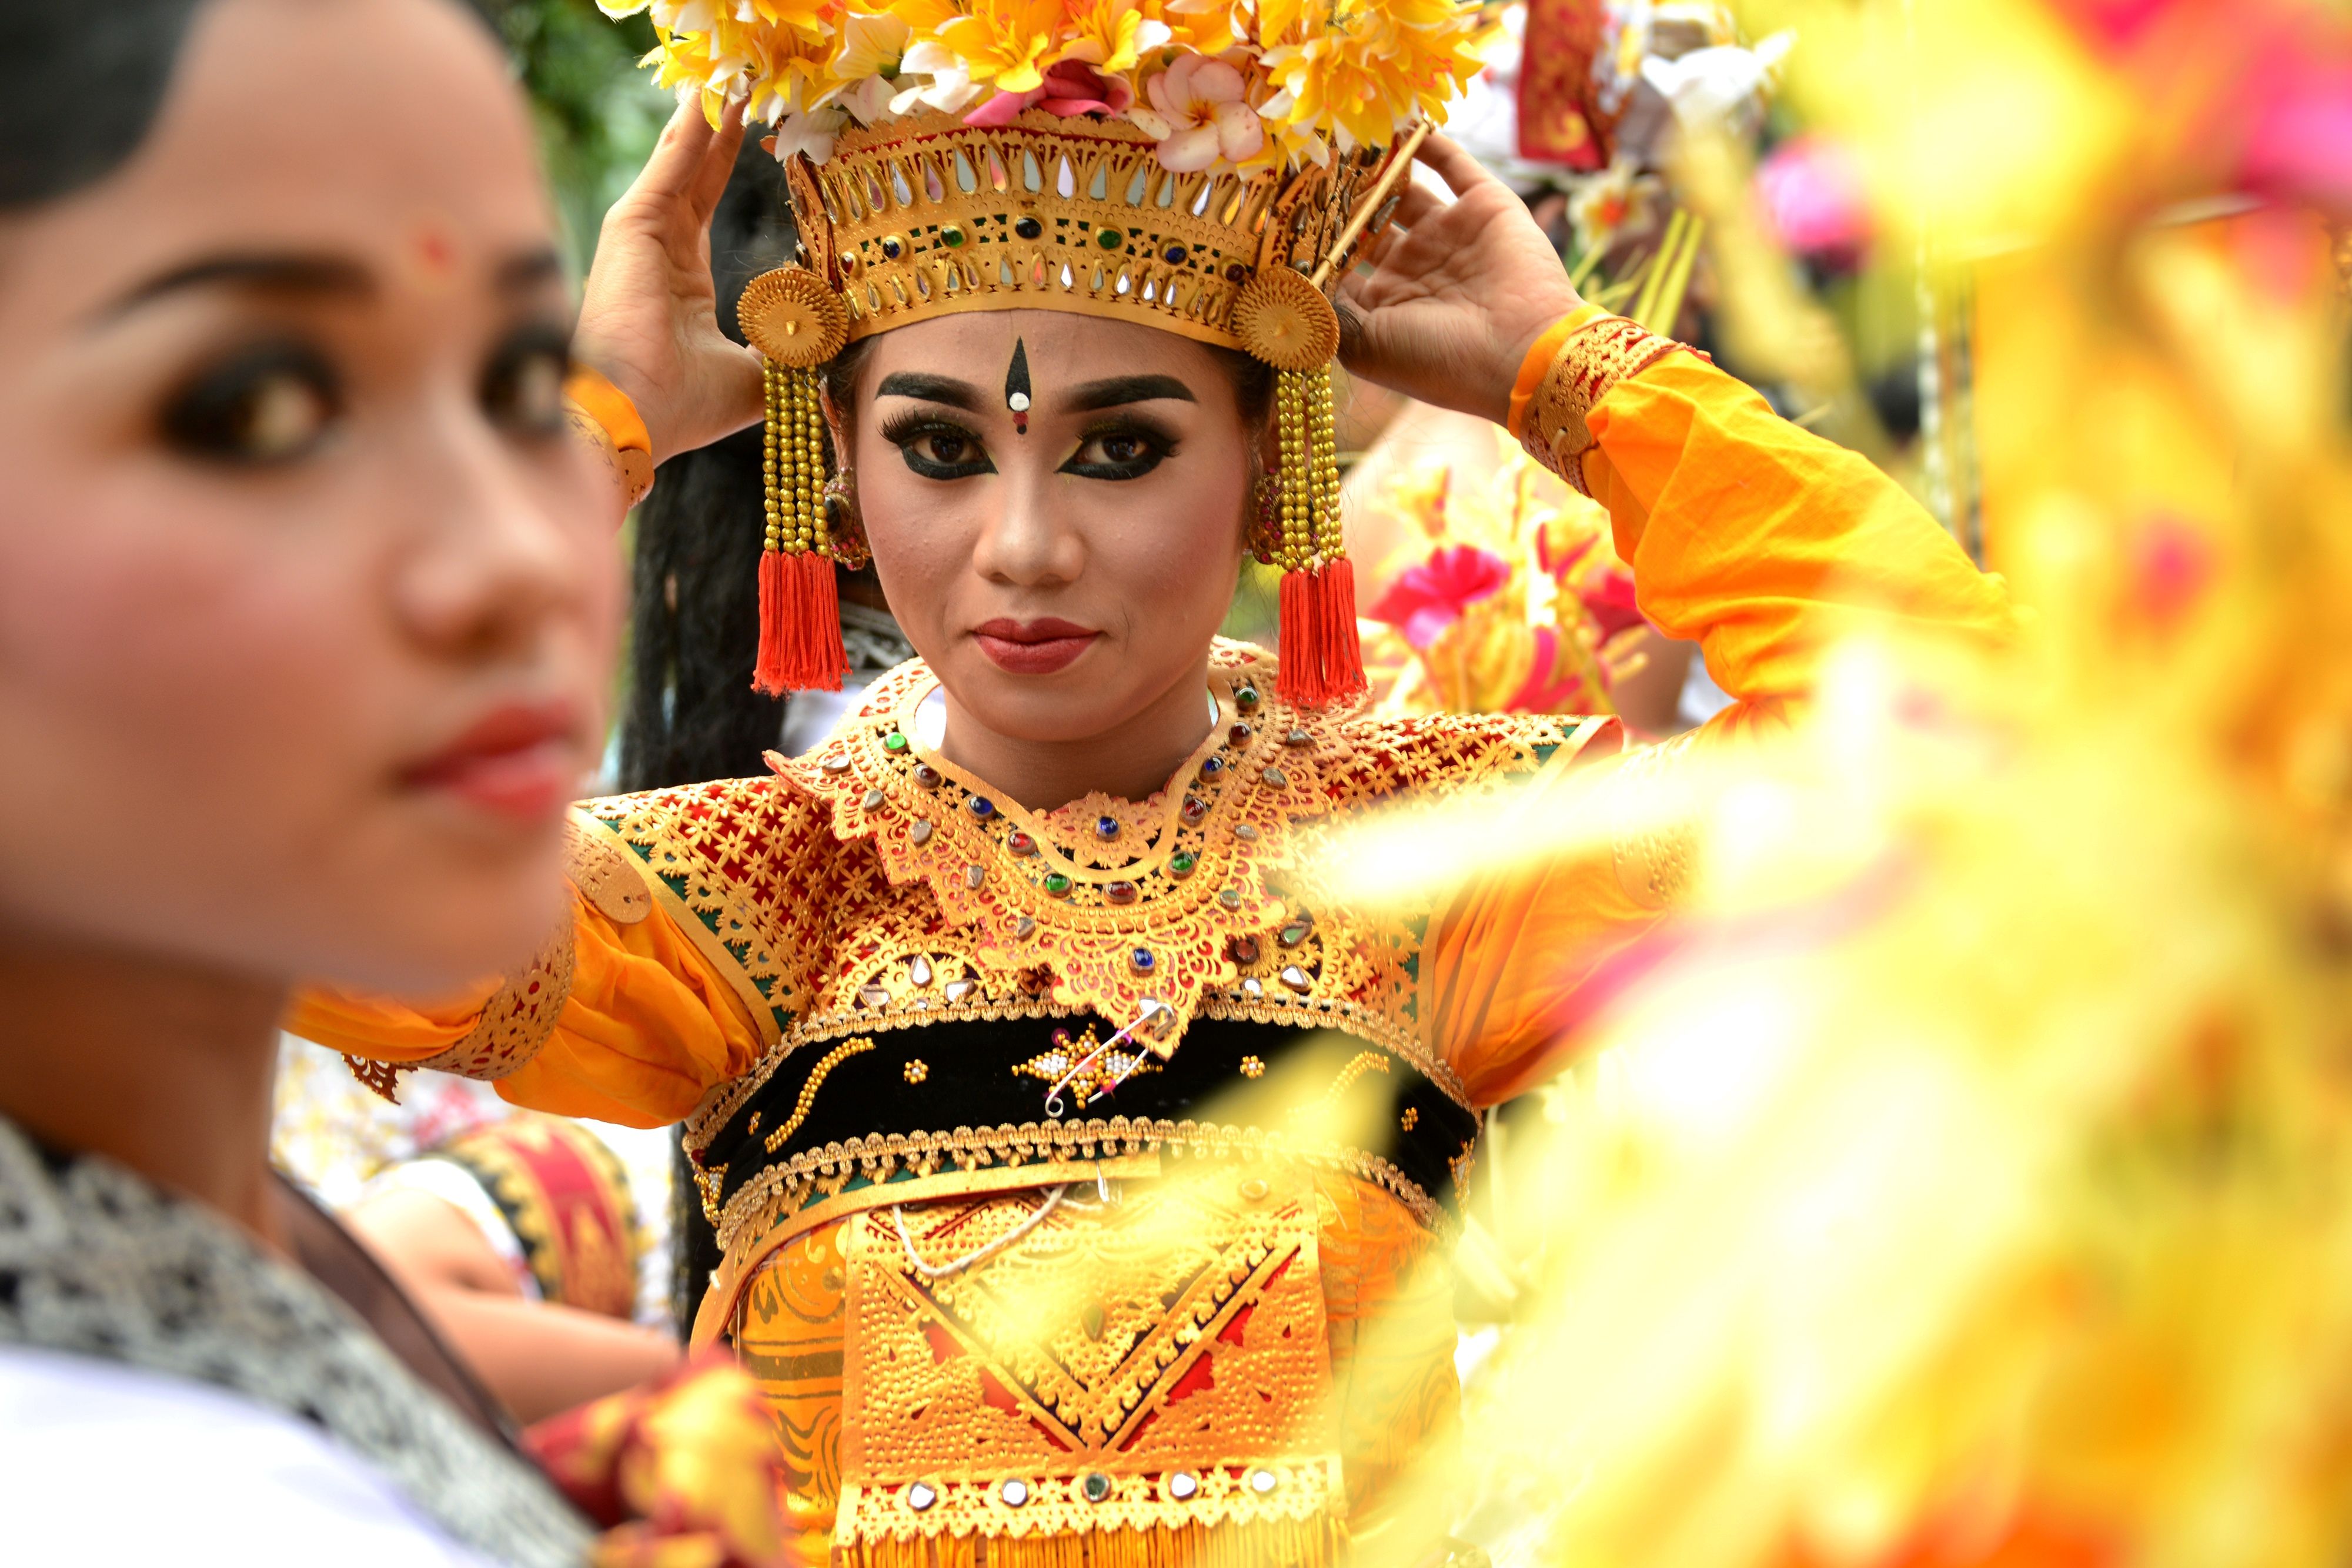 احتفالات شعبية بالعام الجديد فى إندونيسيا